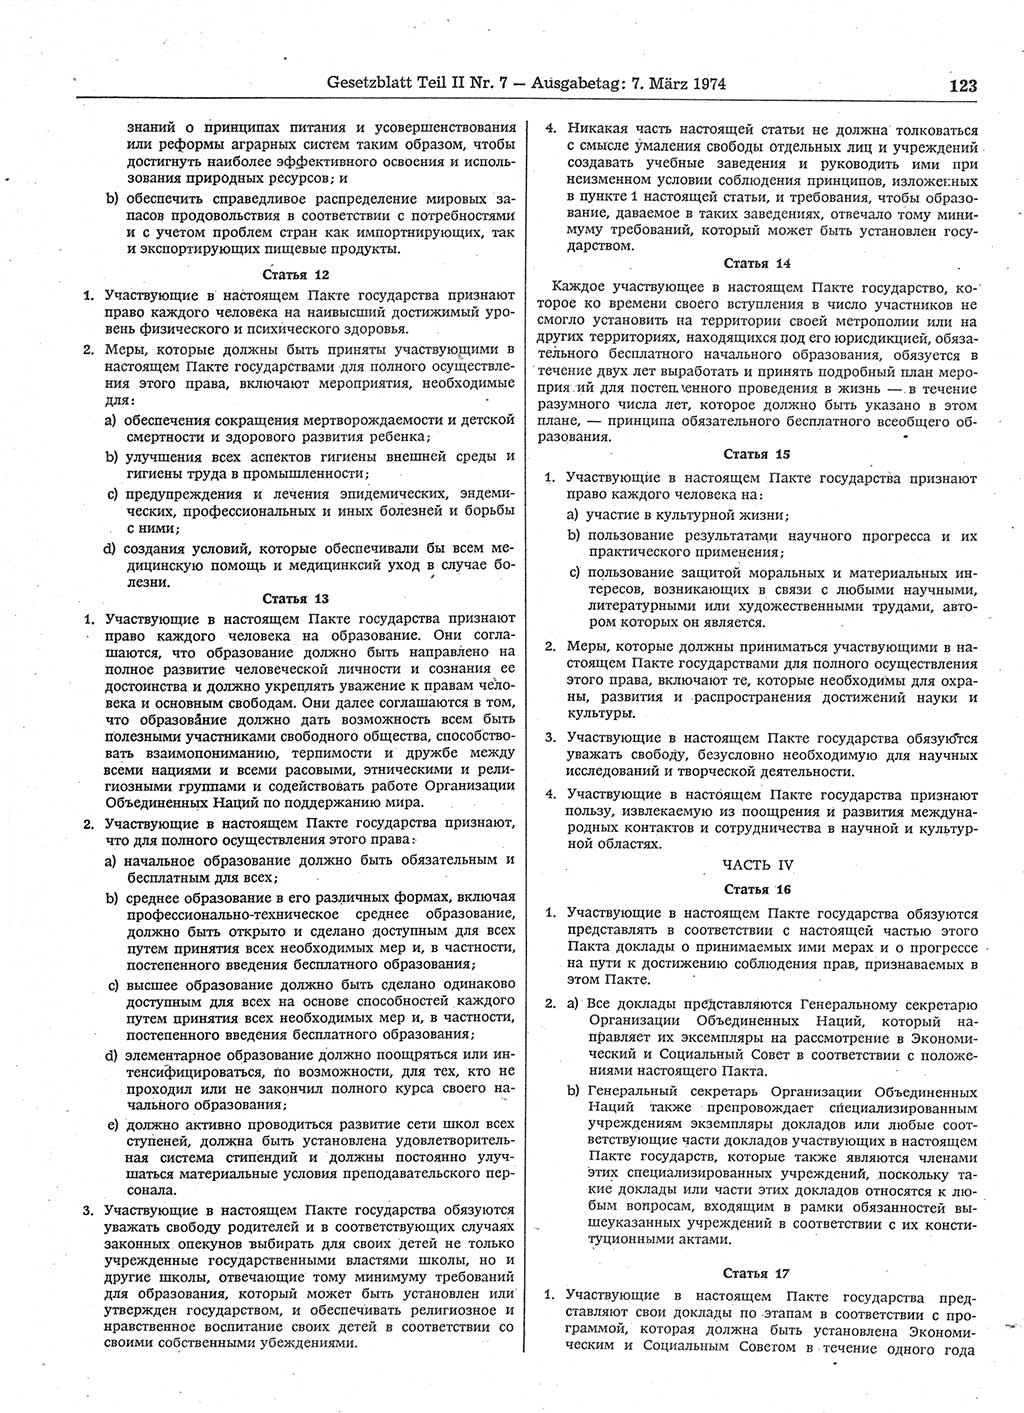 Gesetzblatt (GBl.) der Deutschen Demokratischen Republik (DDR) Teil ⅠⅠ 1974, Seite 123 (GBl. DDR ⅠⅠ 1974, S. 123)